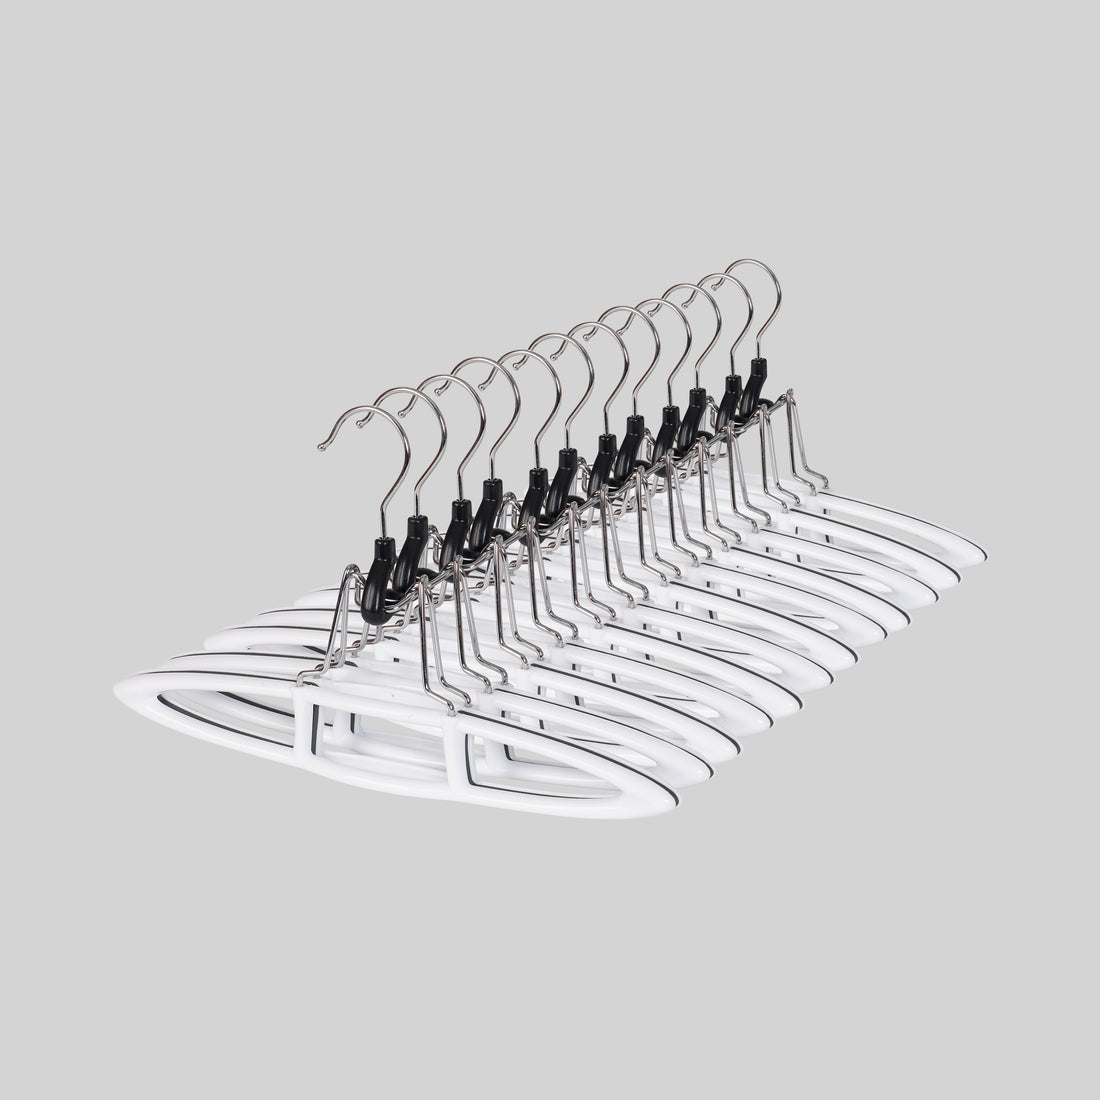 neatfreak! 10-Pack Plastic Non-slip Grip Clothing Hanger (Gray) in the  Hangers department at